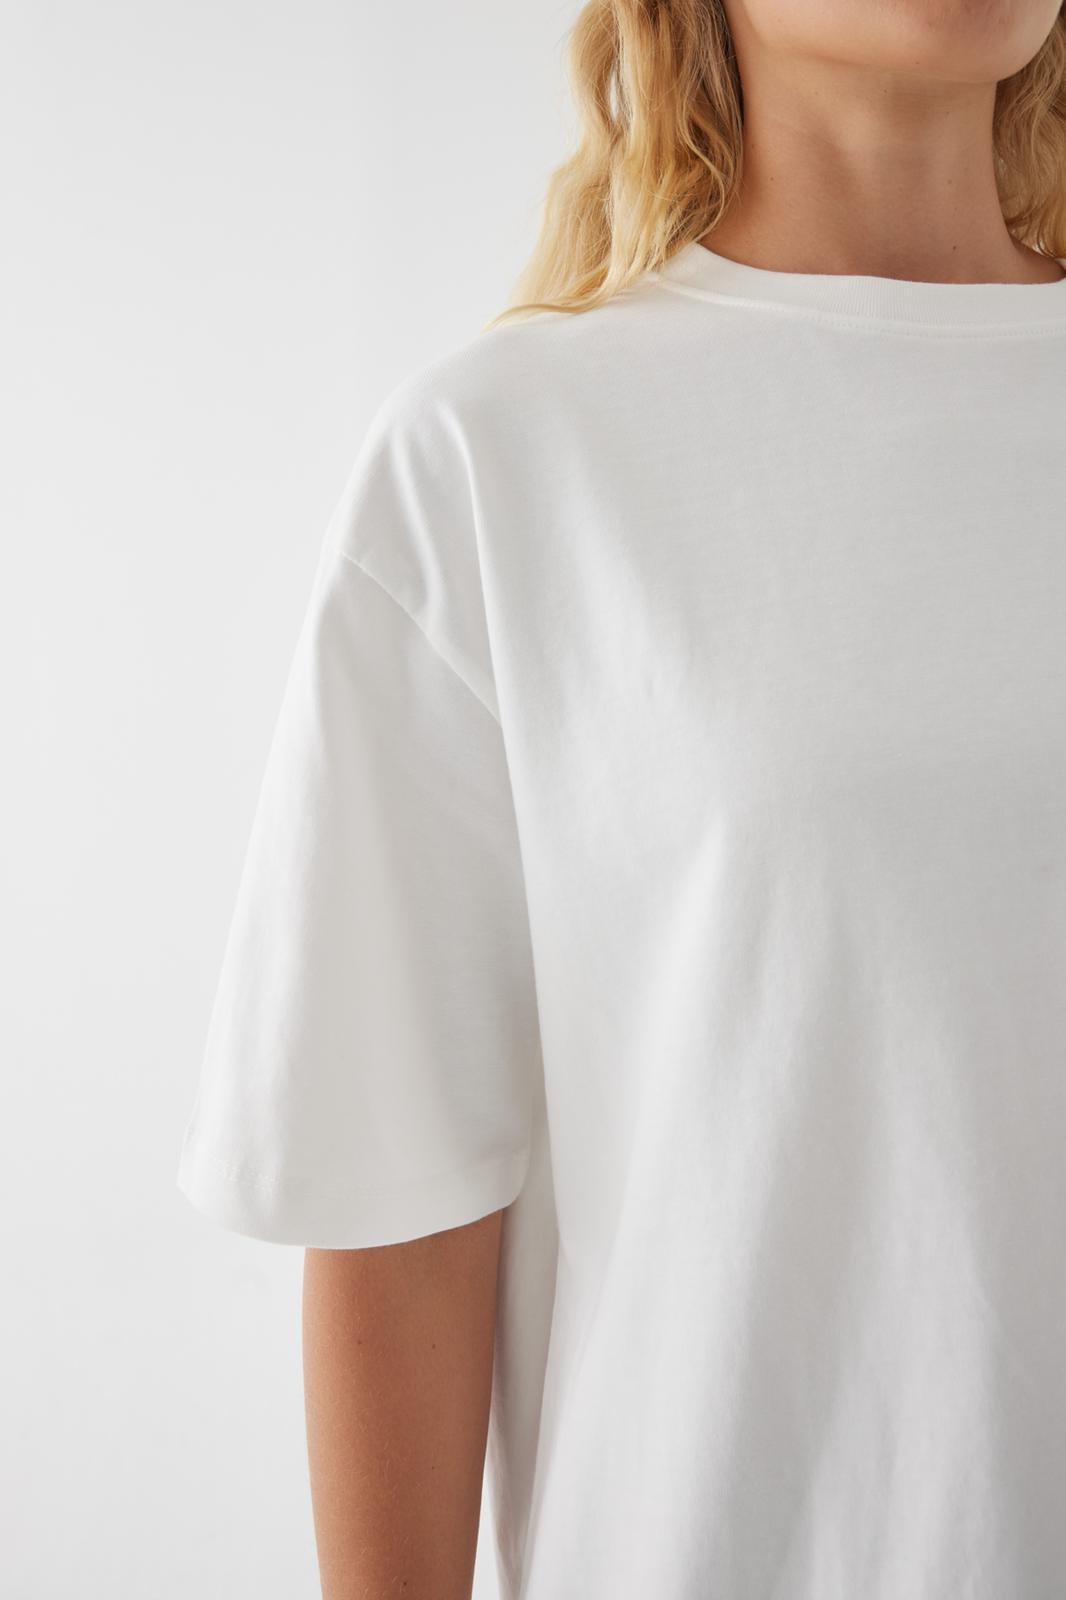 Serenity White/Cream Oversize T-Shirt